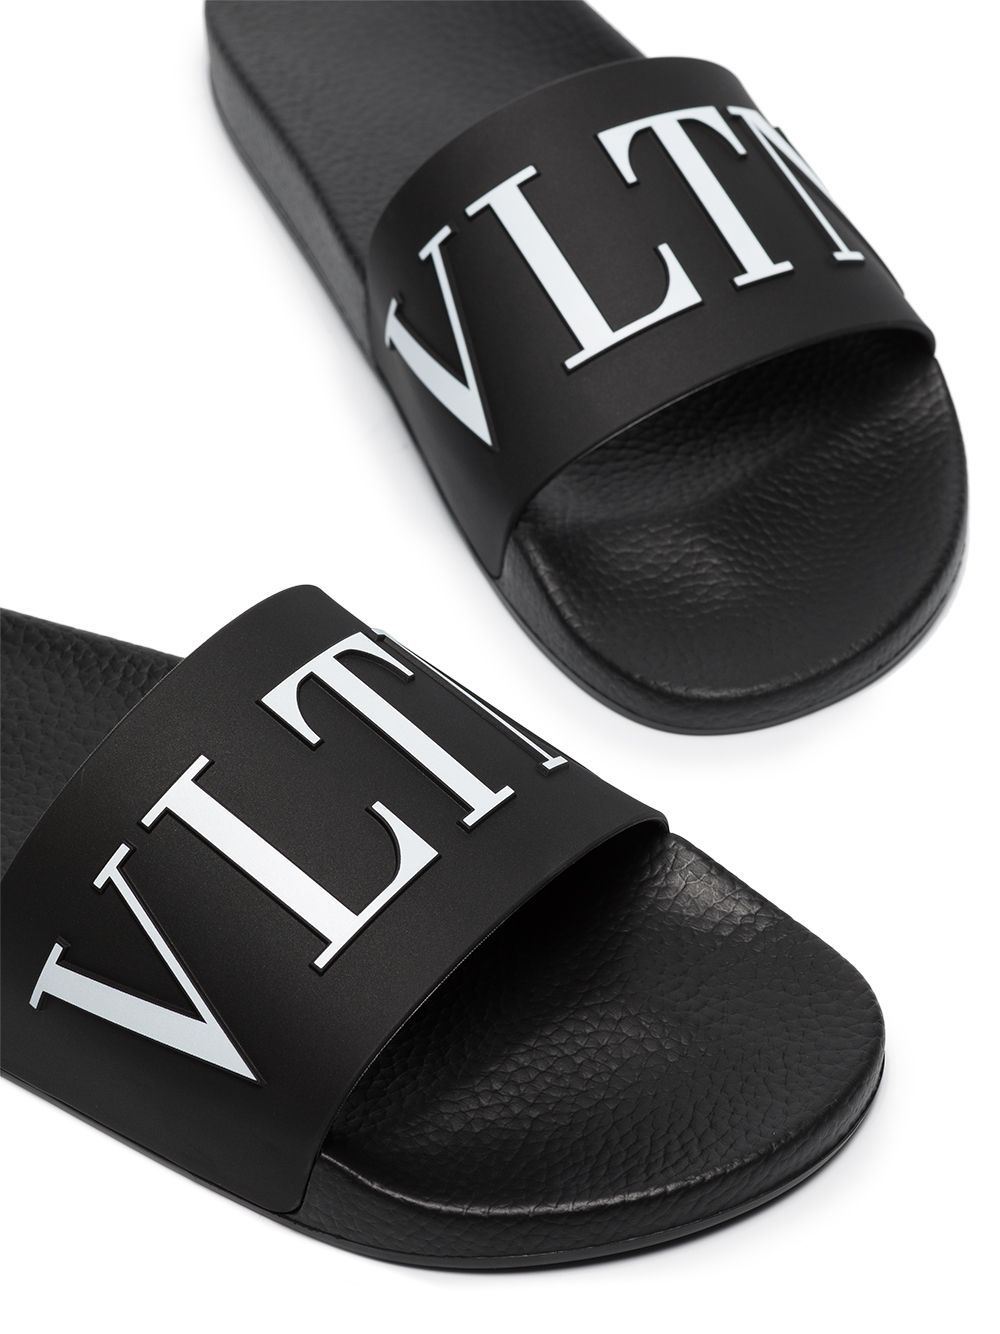 Pantofola nera con logo VLTN